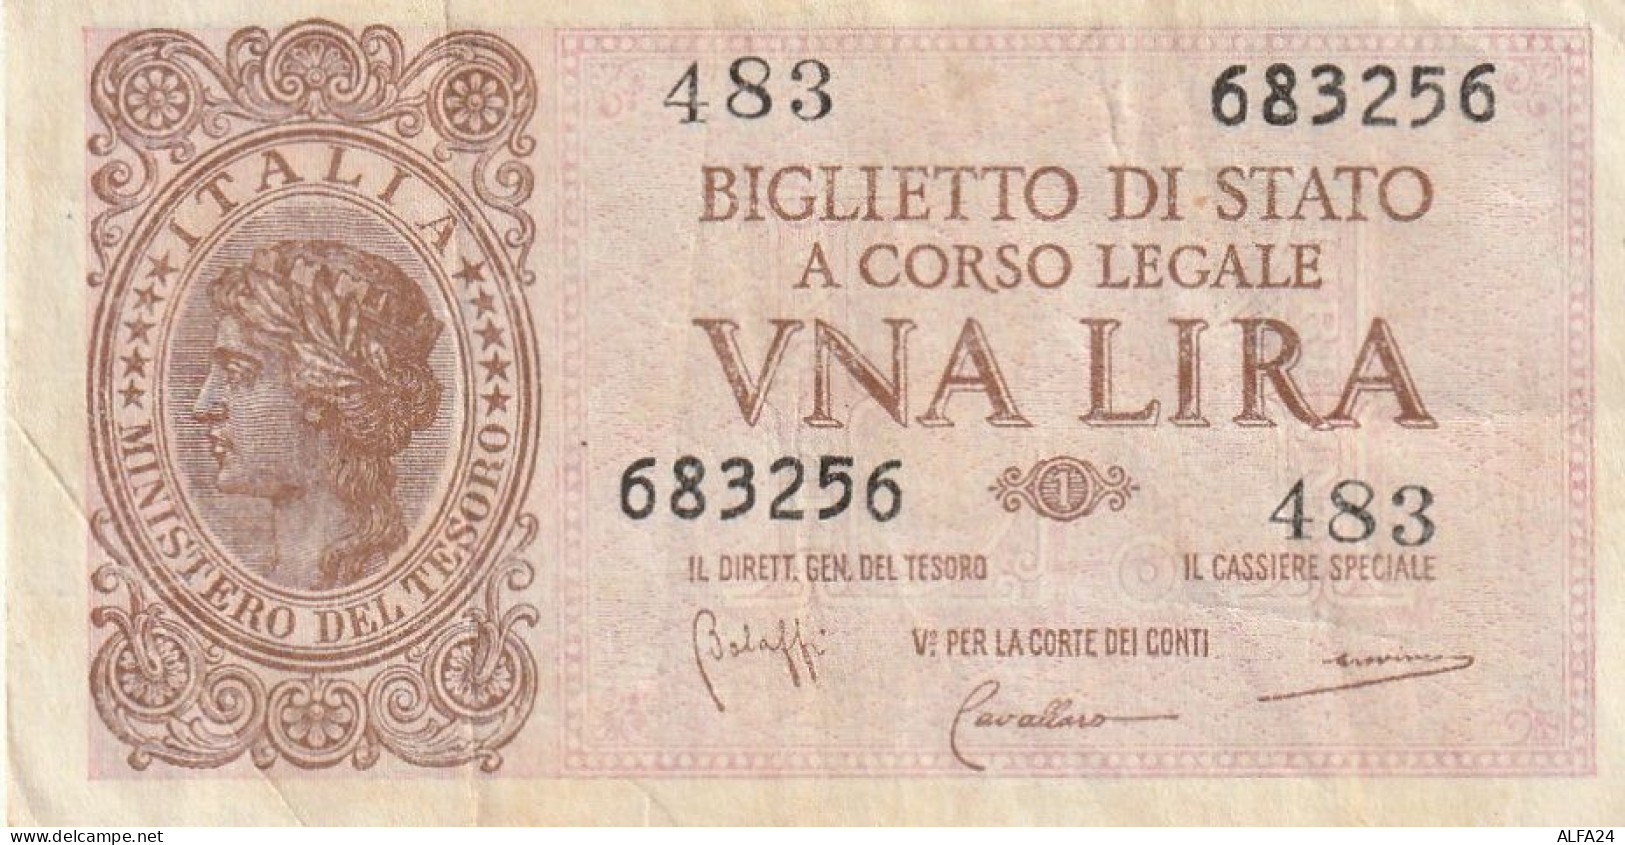 BANCONOTA BIGLIETTO DI STATO ITALIA 1 LIRA VF  (B_363 - Italië – 1 Lira